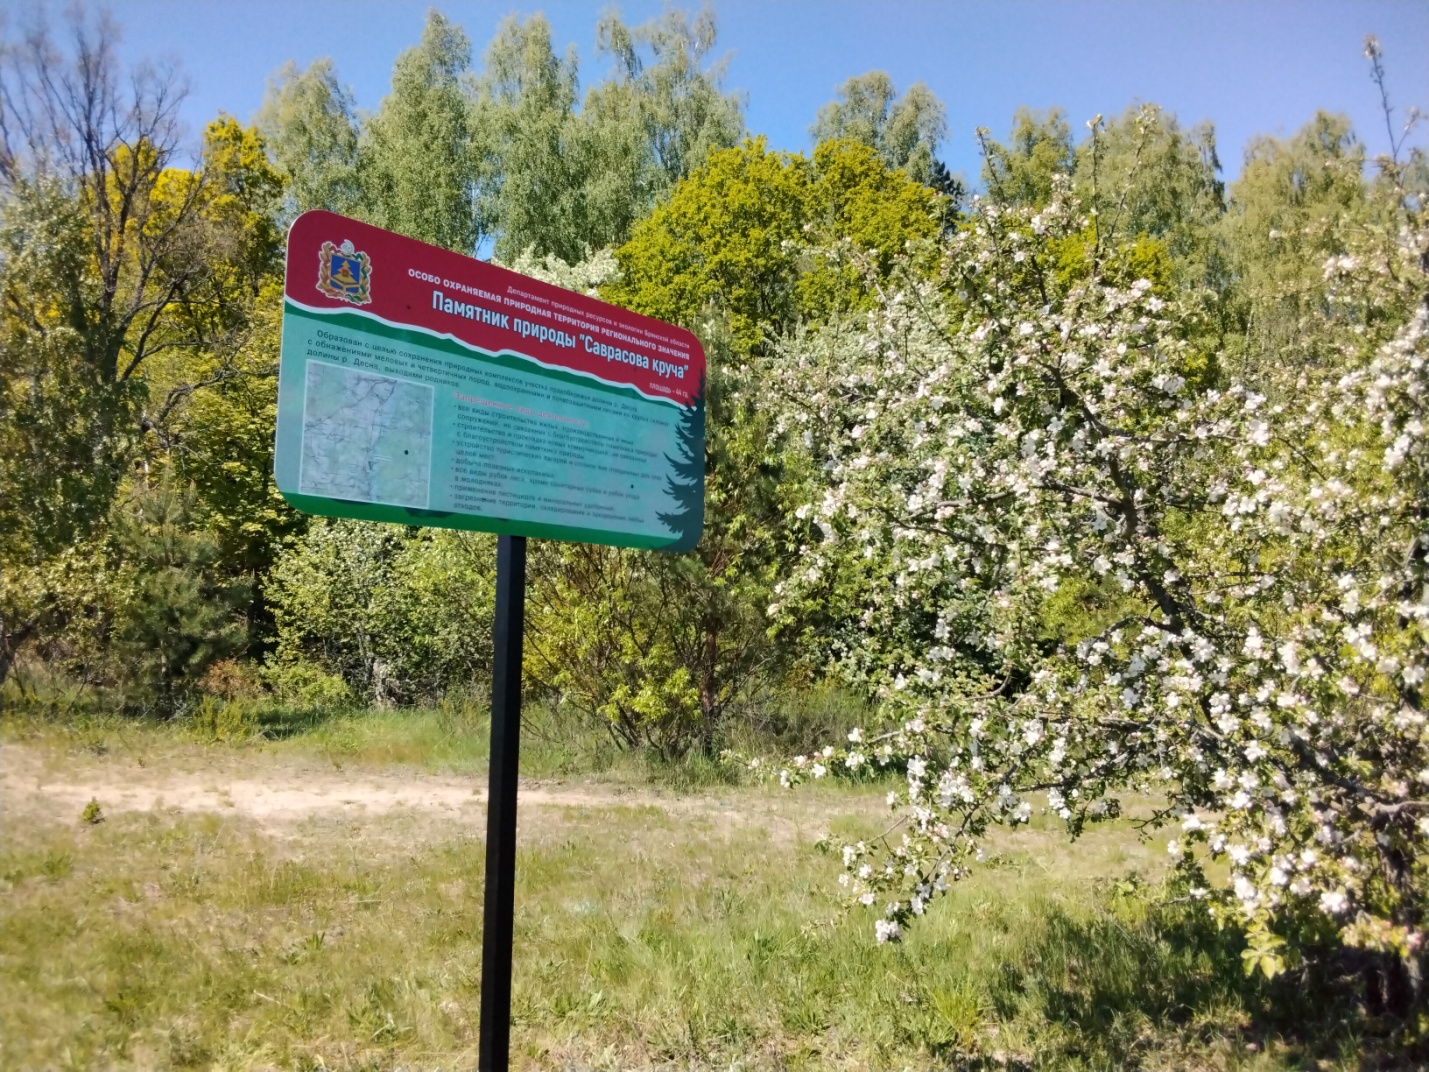 Установлены баннеры по границам особо охраняемых территорий Выгоничского района